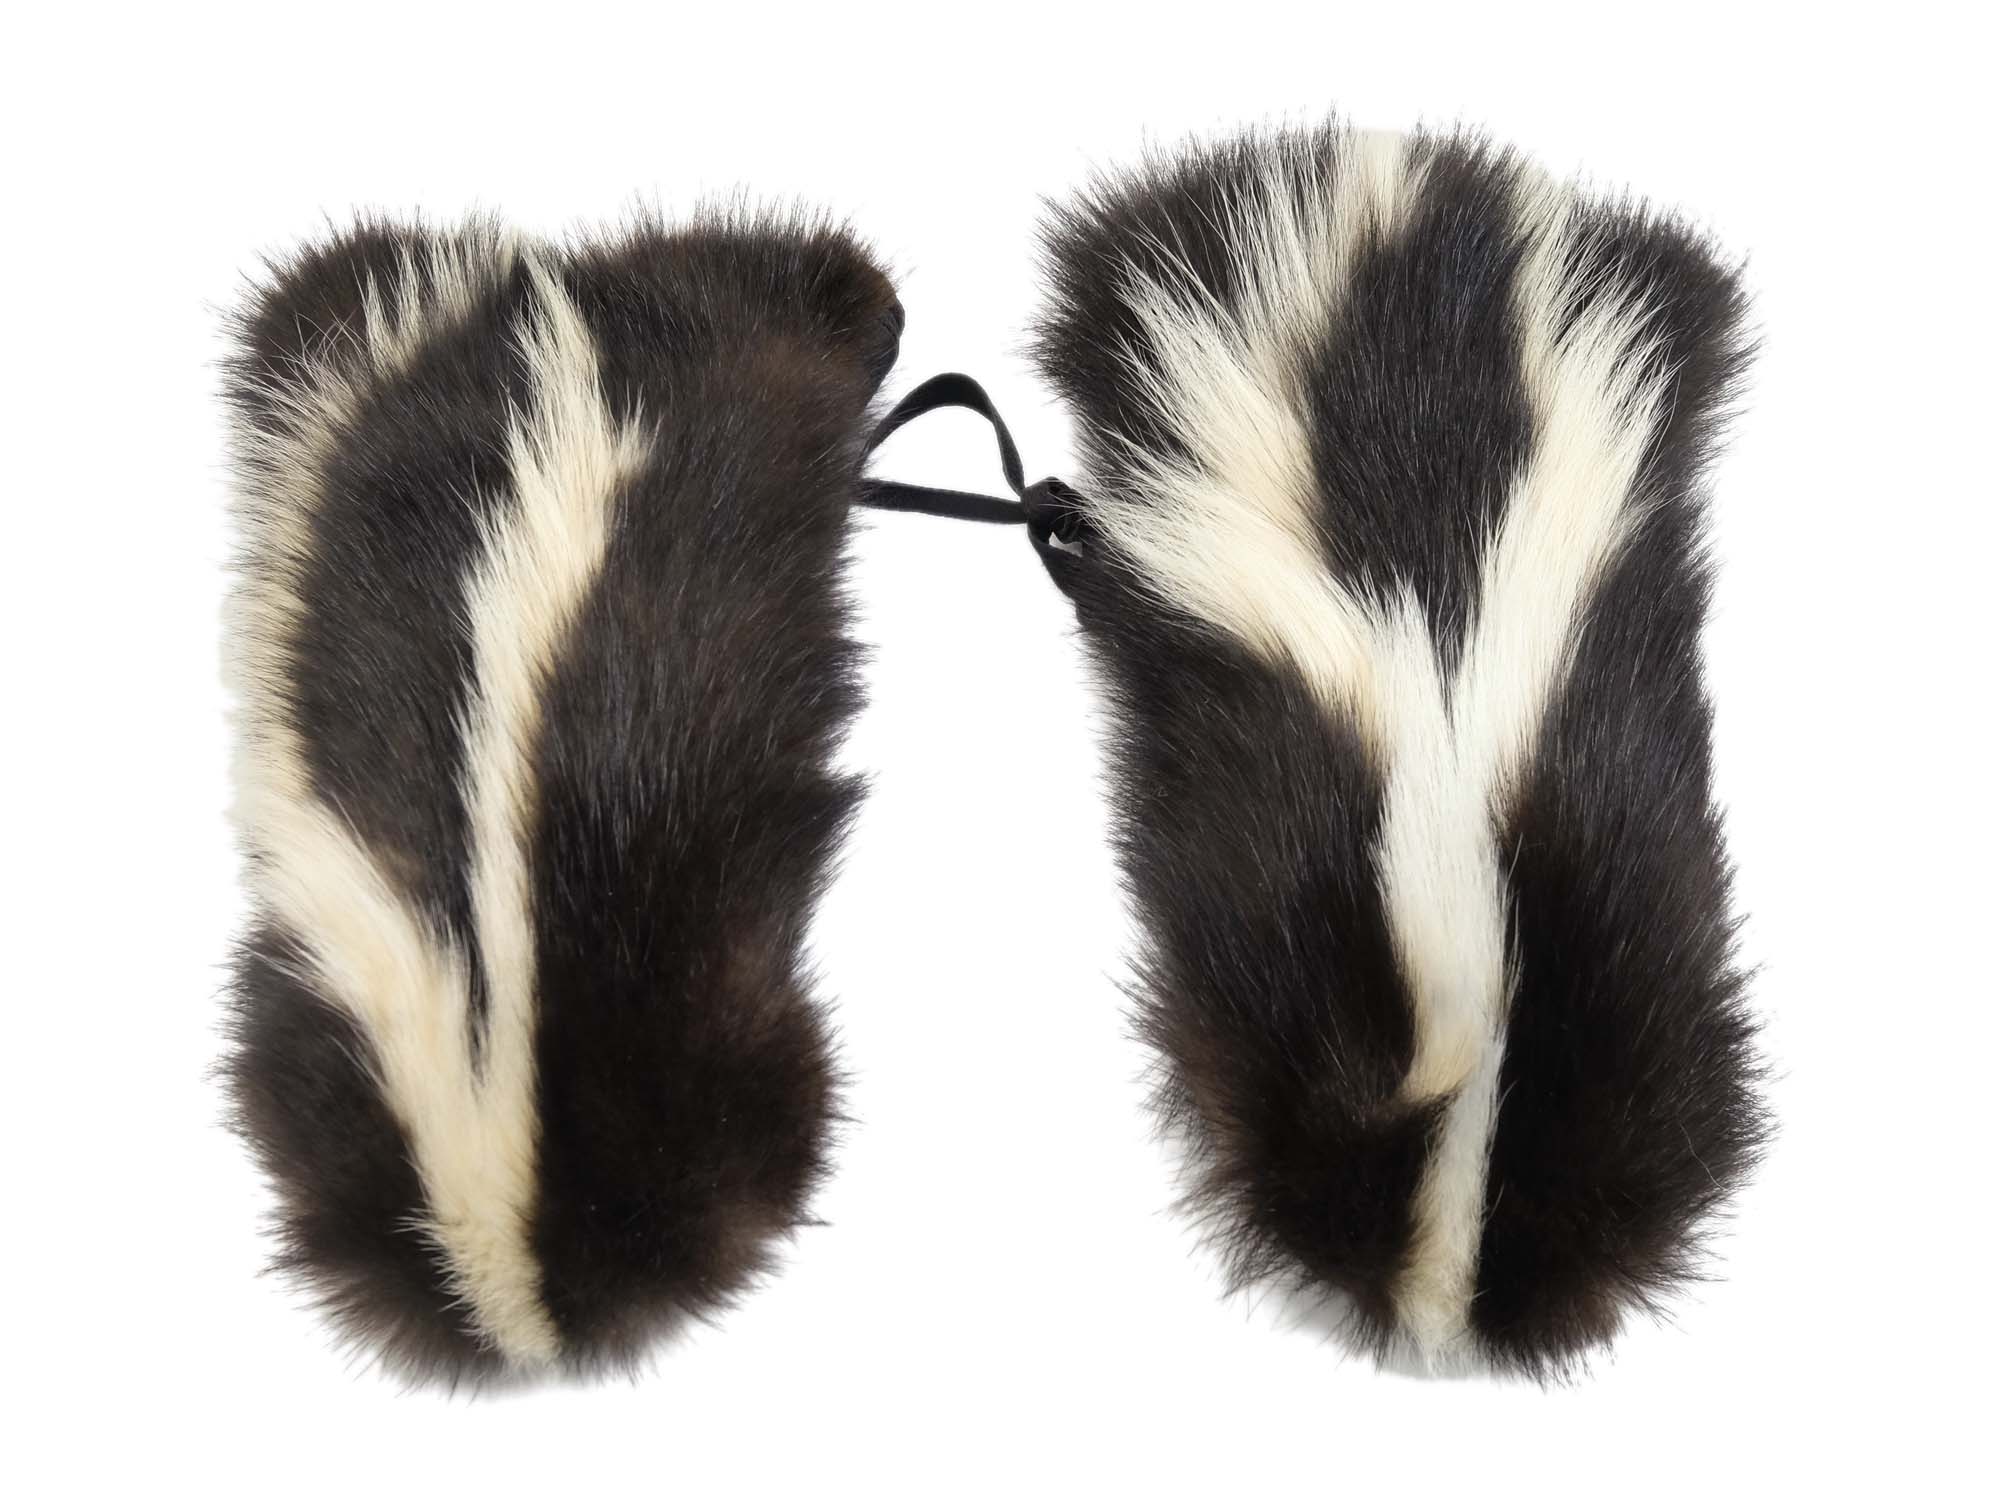 Skunk Mitts: Gallery Item skunk gloves